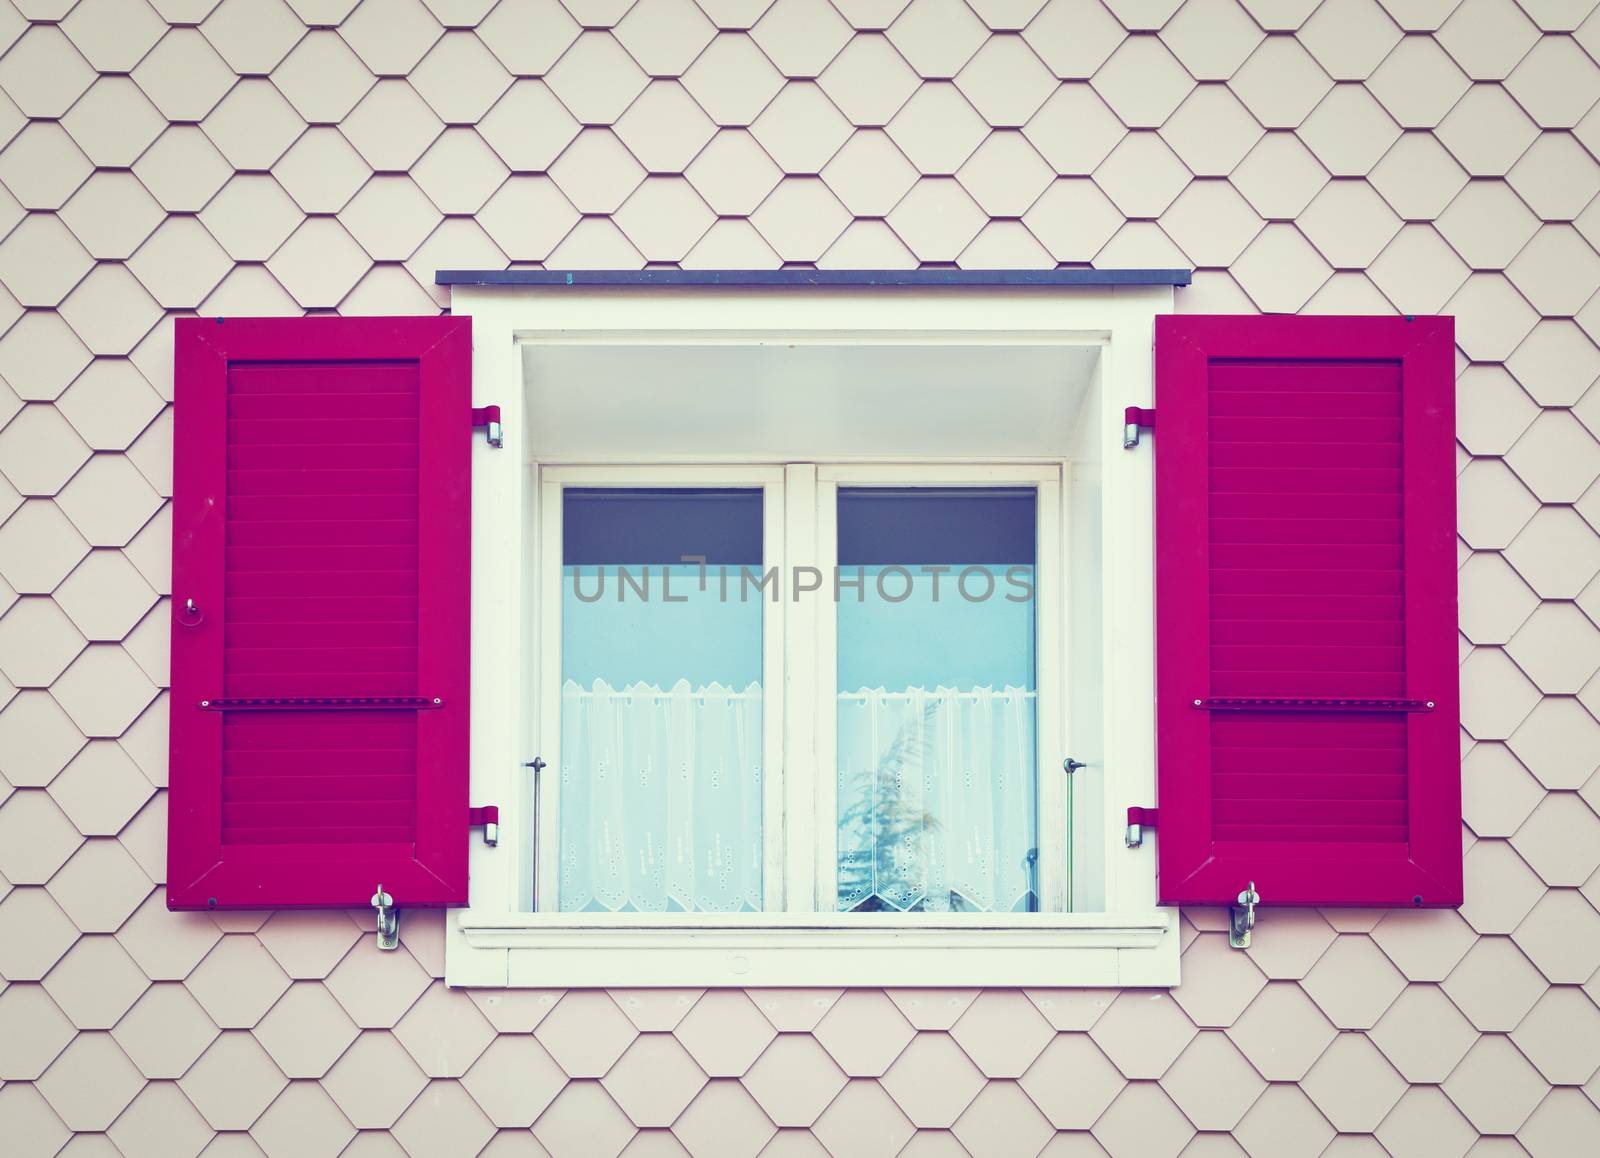 Window on the Facade in Switzerland, Instagram Effect